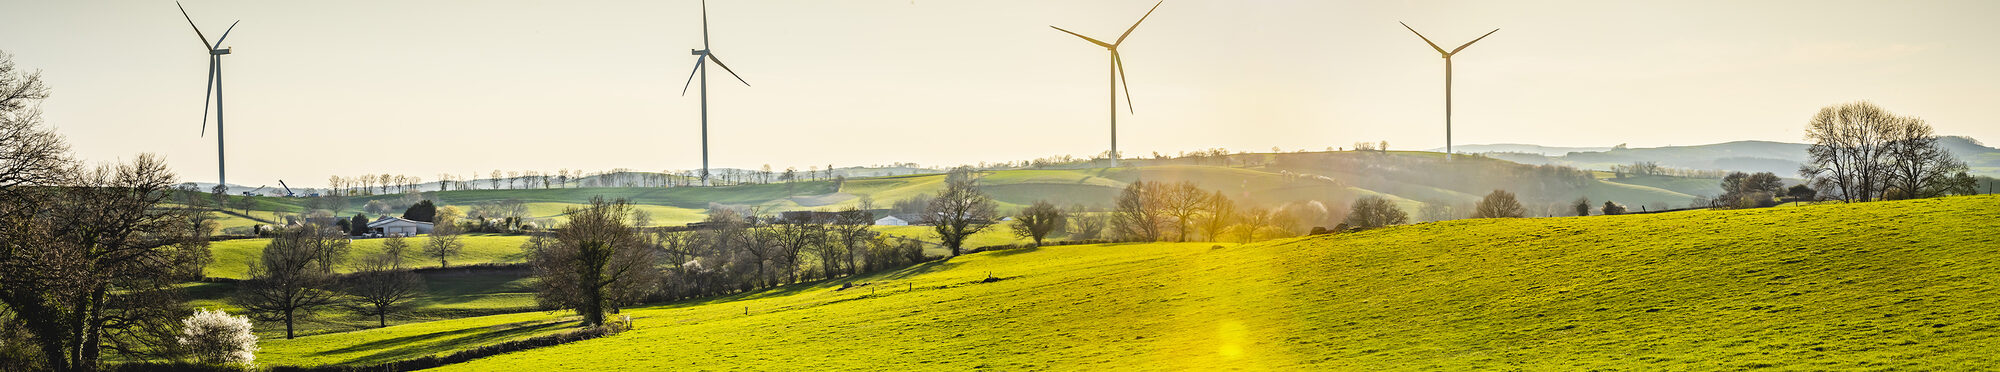 Motivbild Landschaft mit Windkraftanlagen [Foto: © GoldenEyesL.A. - stock.adobe.com]